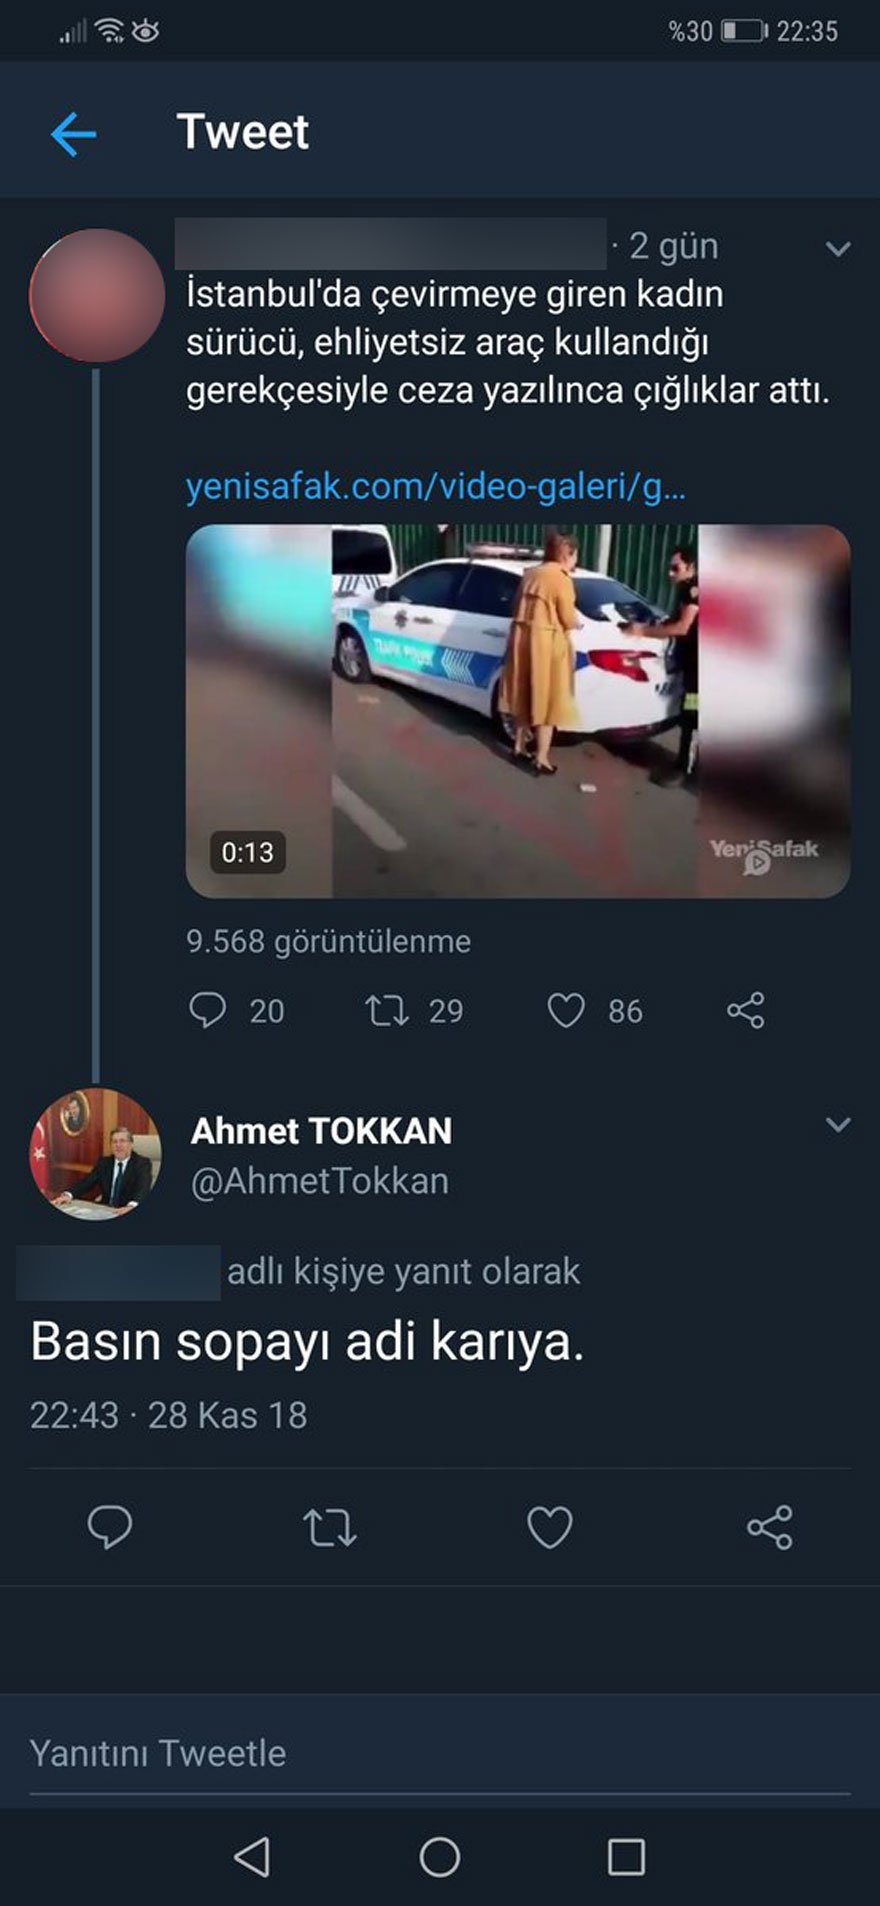 Tokkan'ın sosyal medyadaki hakaret içeren sözleri vatandaşlardan tepki çekti. 